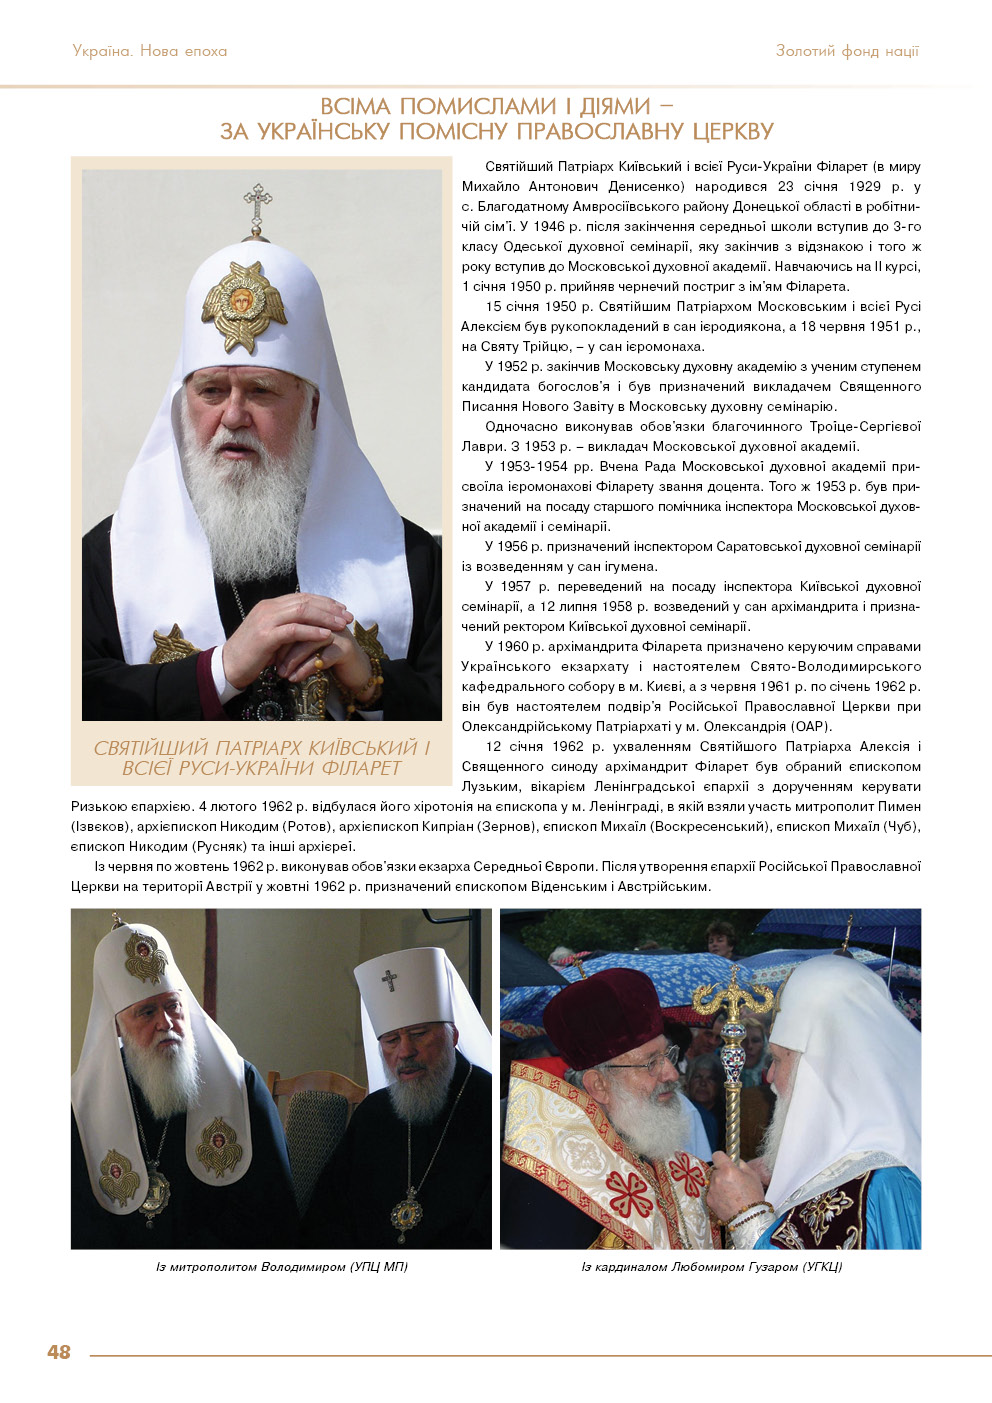 Всіма помислами і діями - за Українську помісну православну церкву - ФІЛАРЕТ